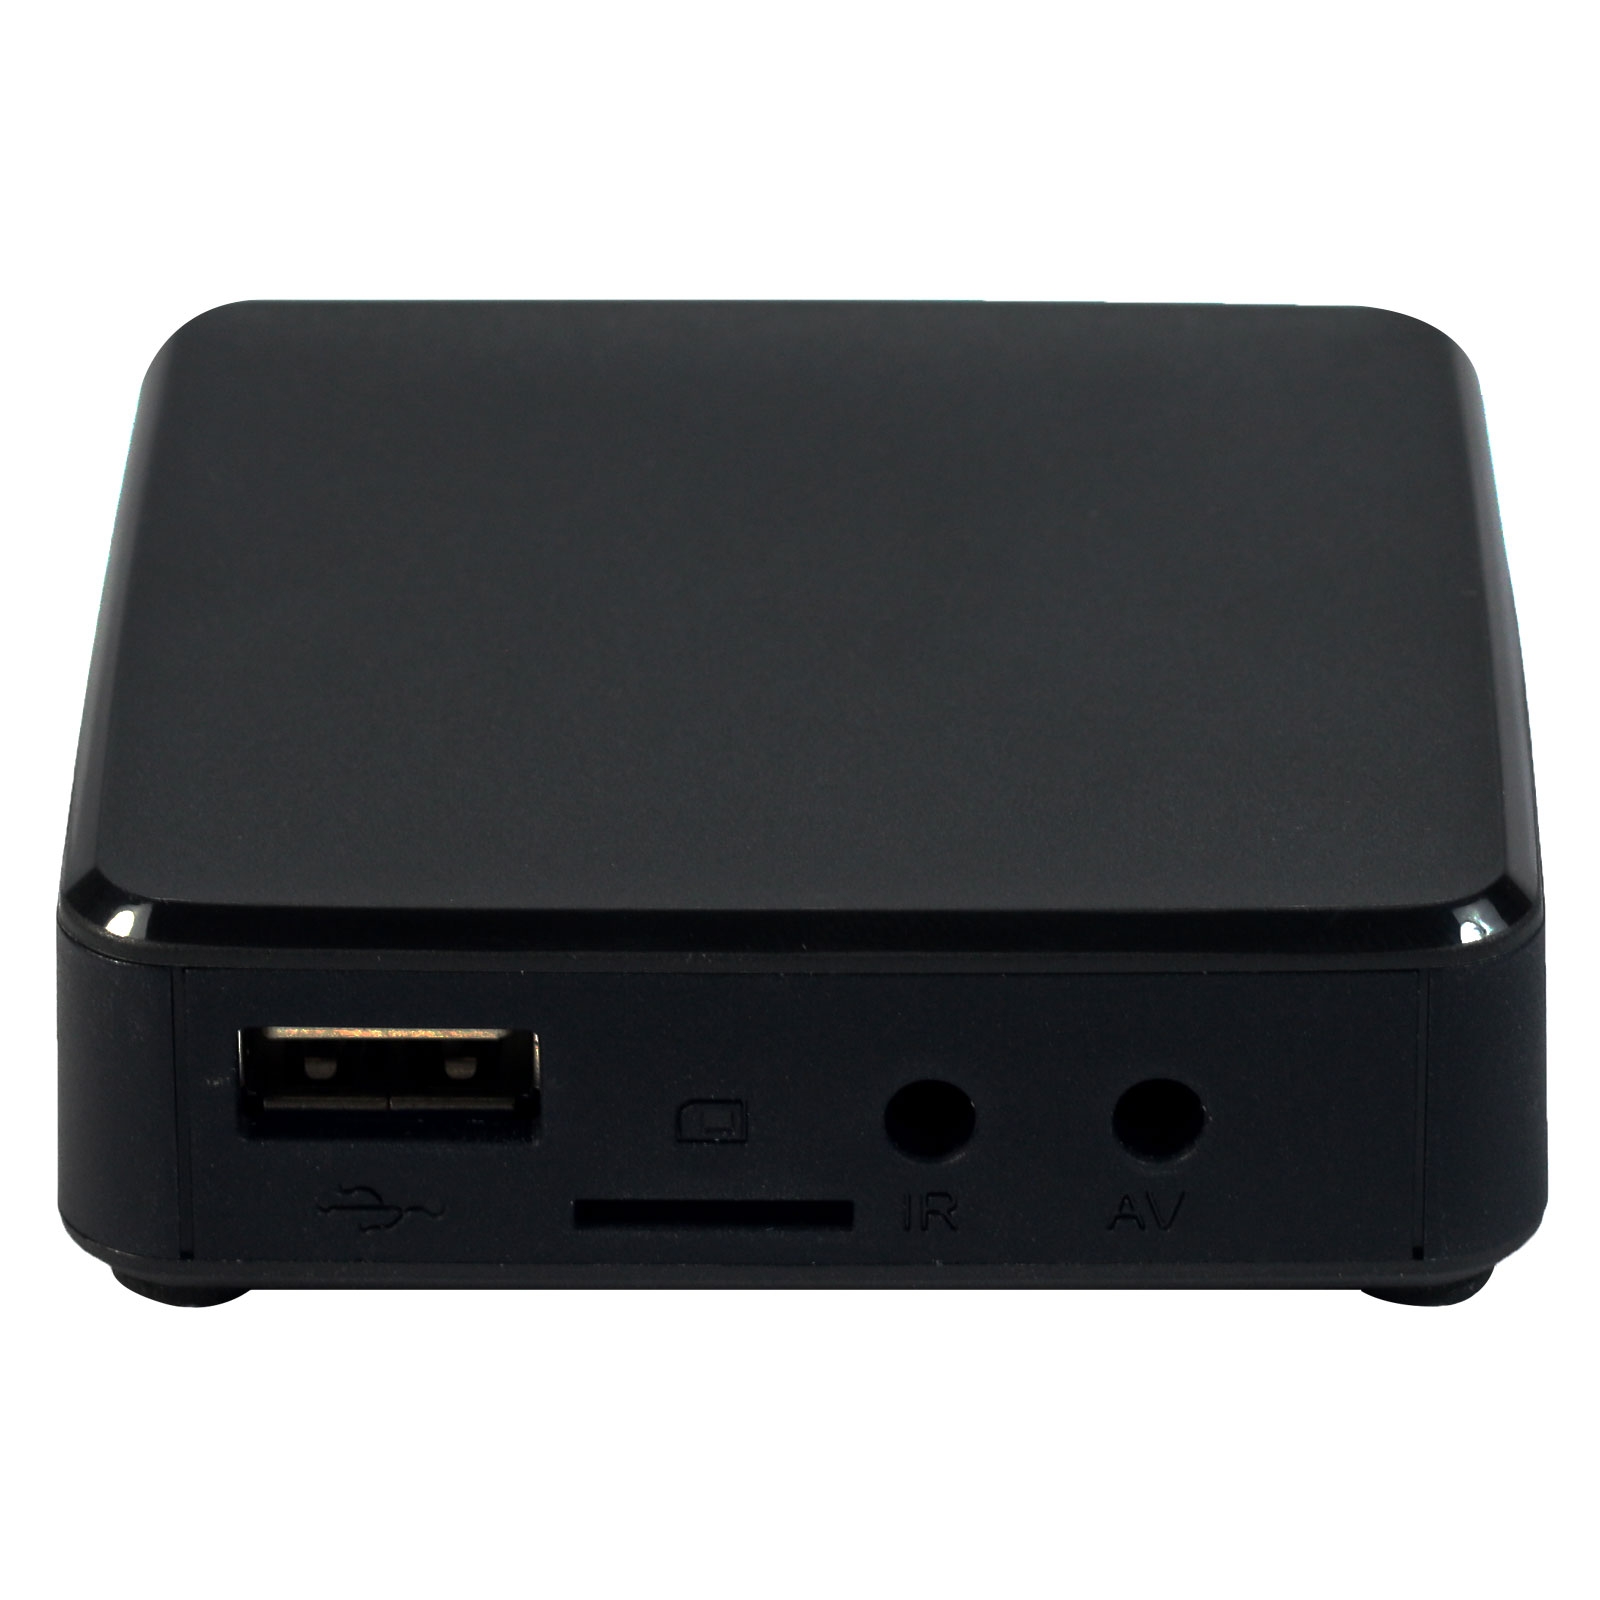 TVIP S-Box v.610 IPTV 4K HEVC UHD Android 8.0 Linux Multimedia Stalker Streamer